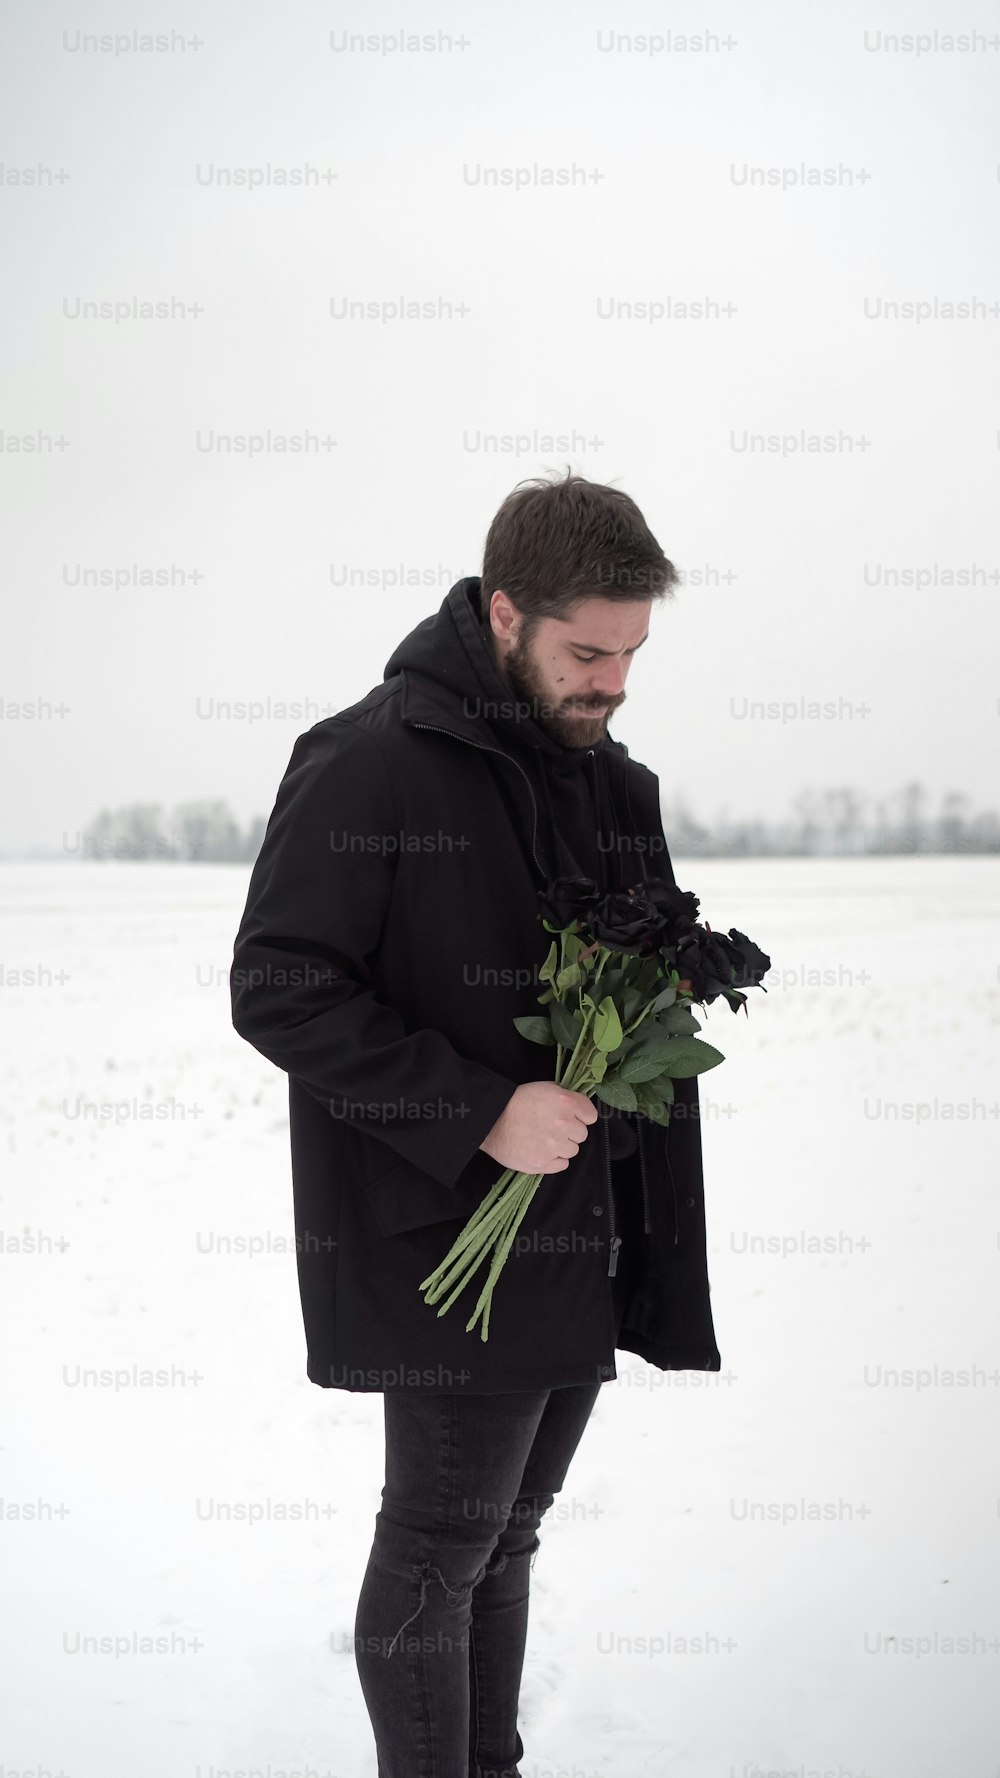 Un homme debout dans la neige tenant un bouquet de fleurs